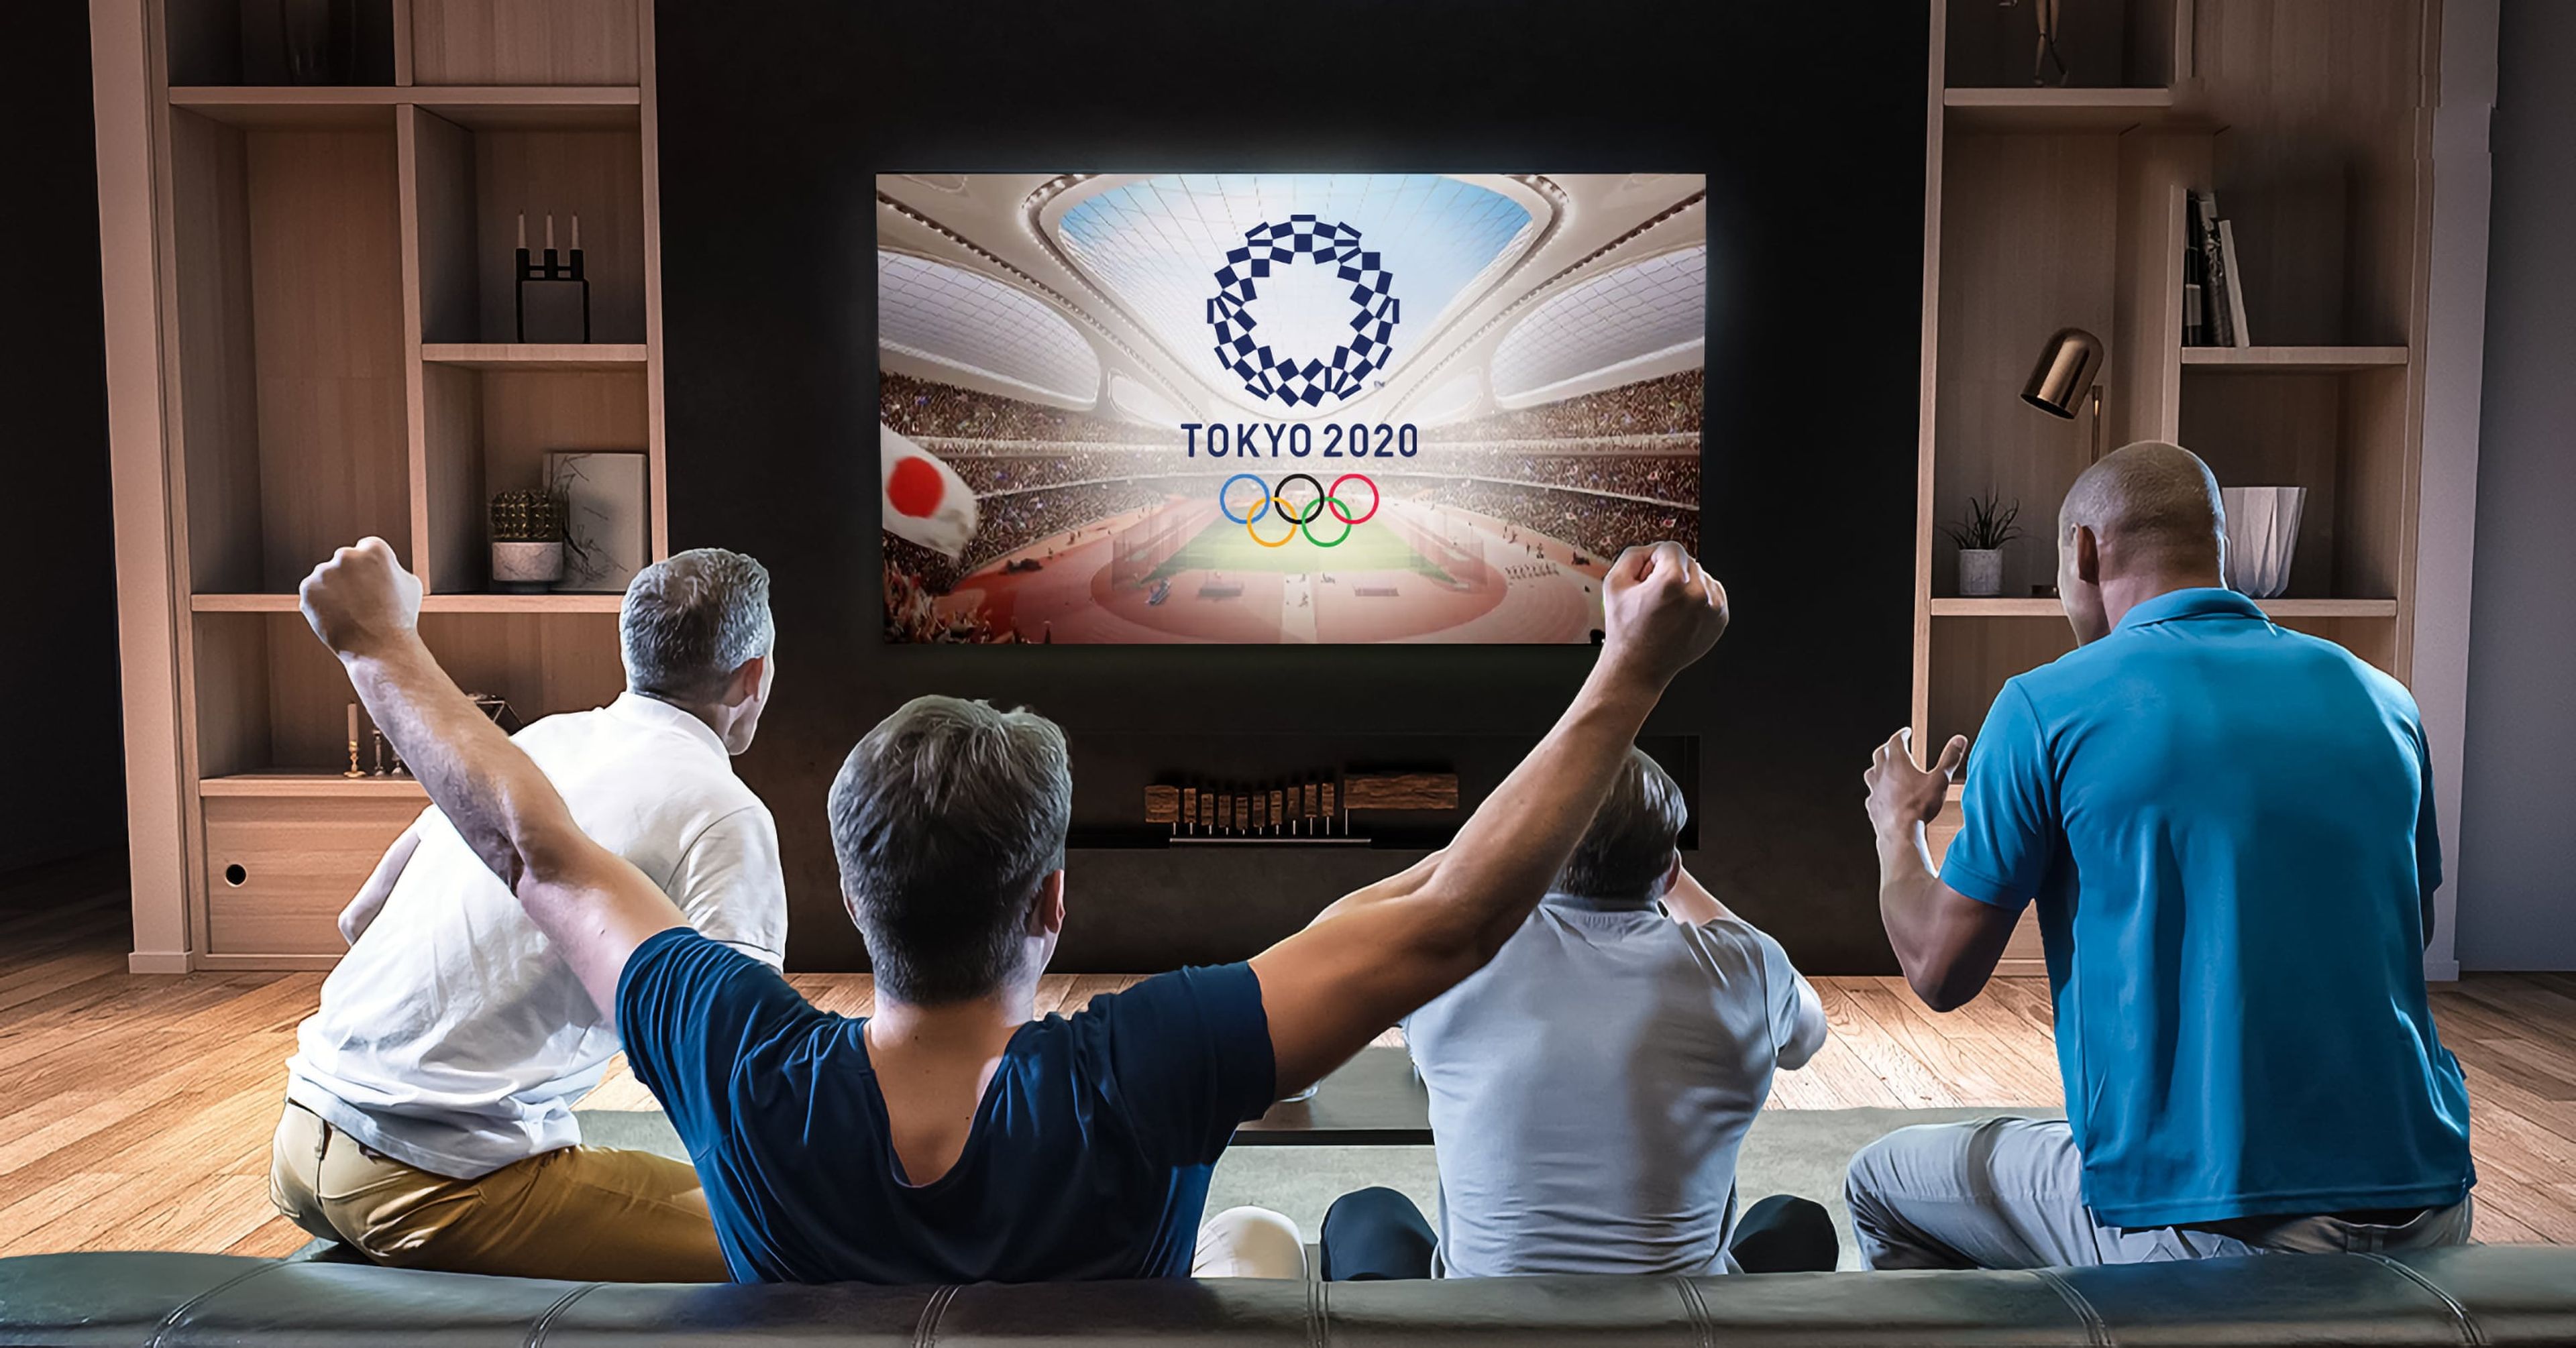 Hombres viendo los Juegos Olímpicos en un televisor